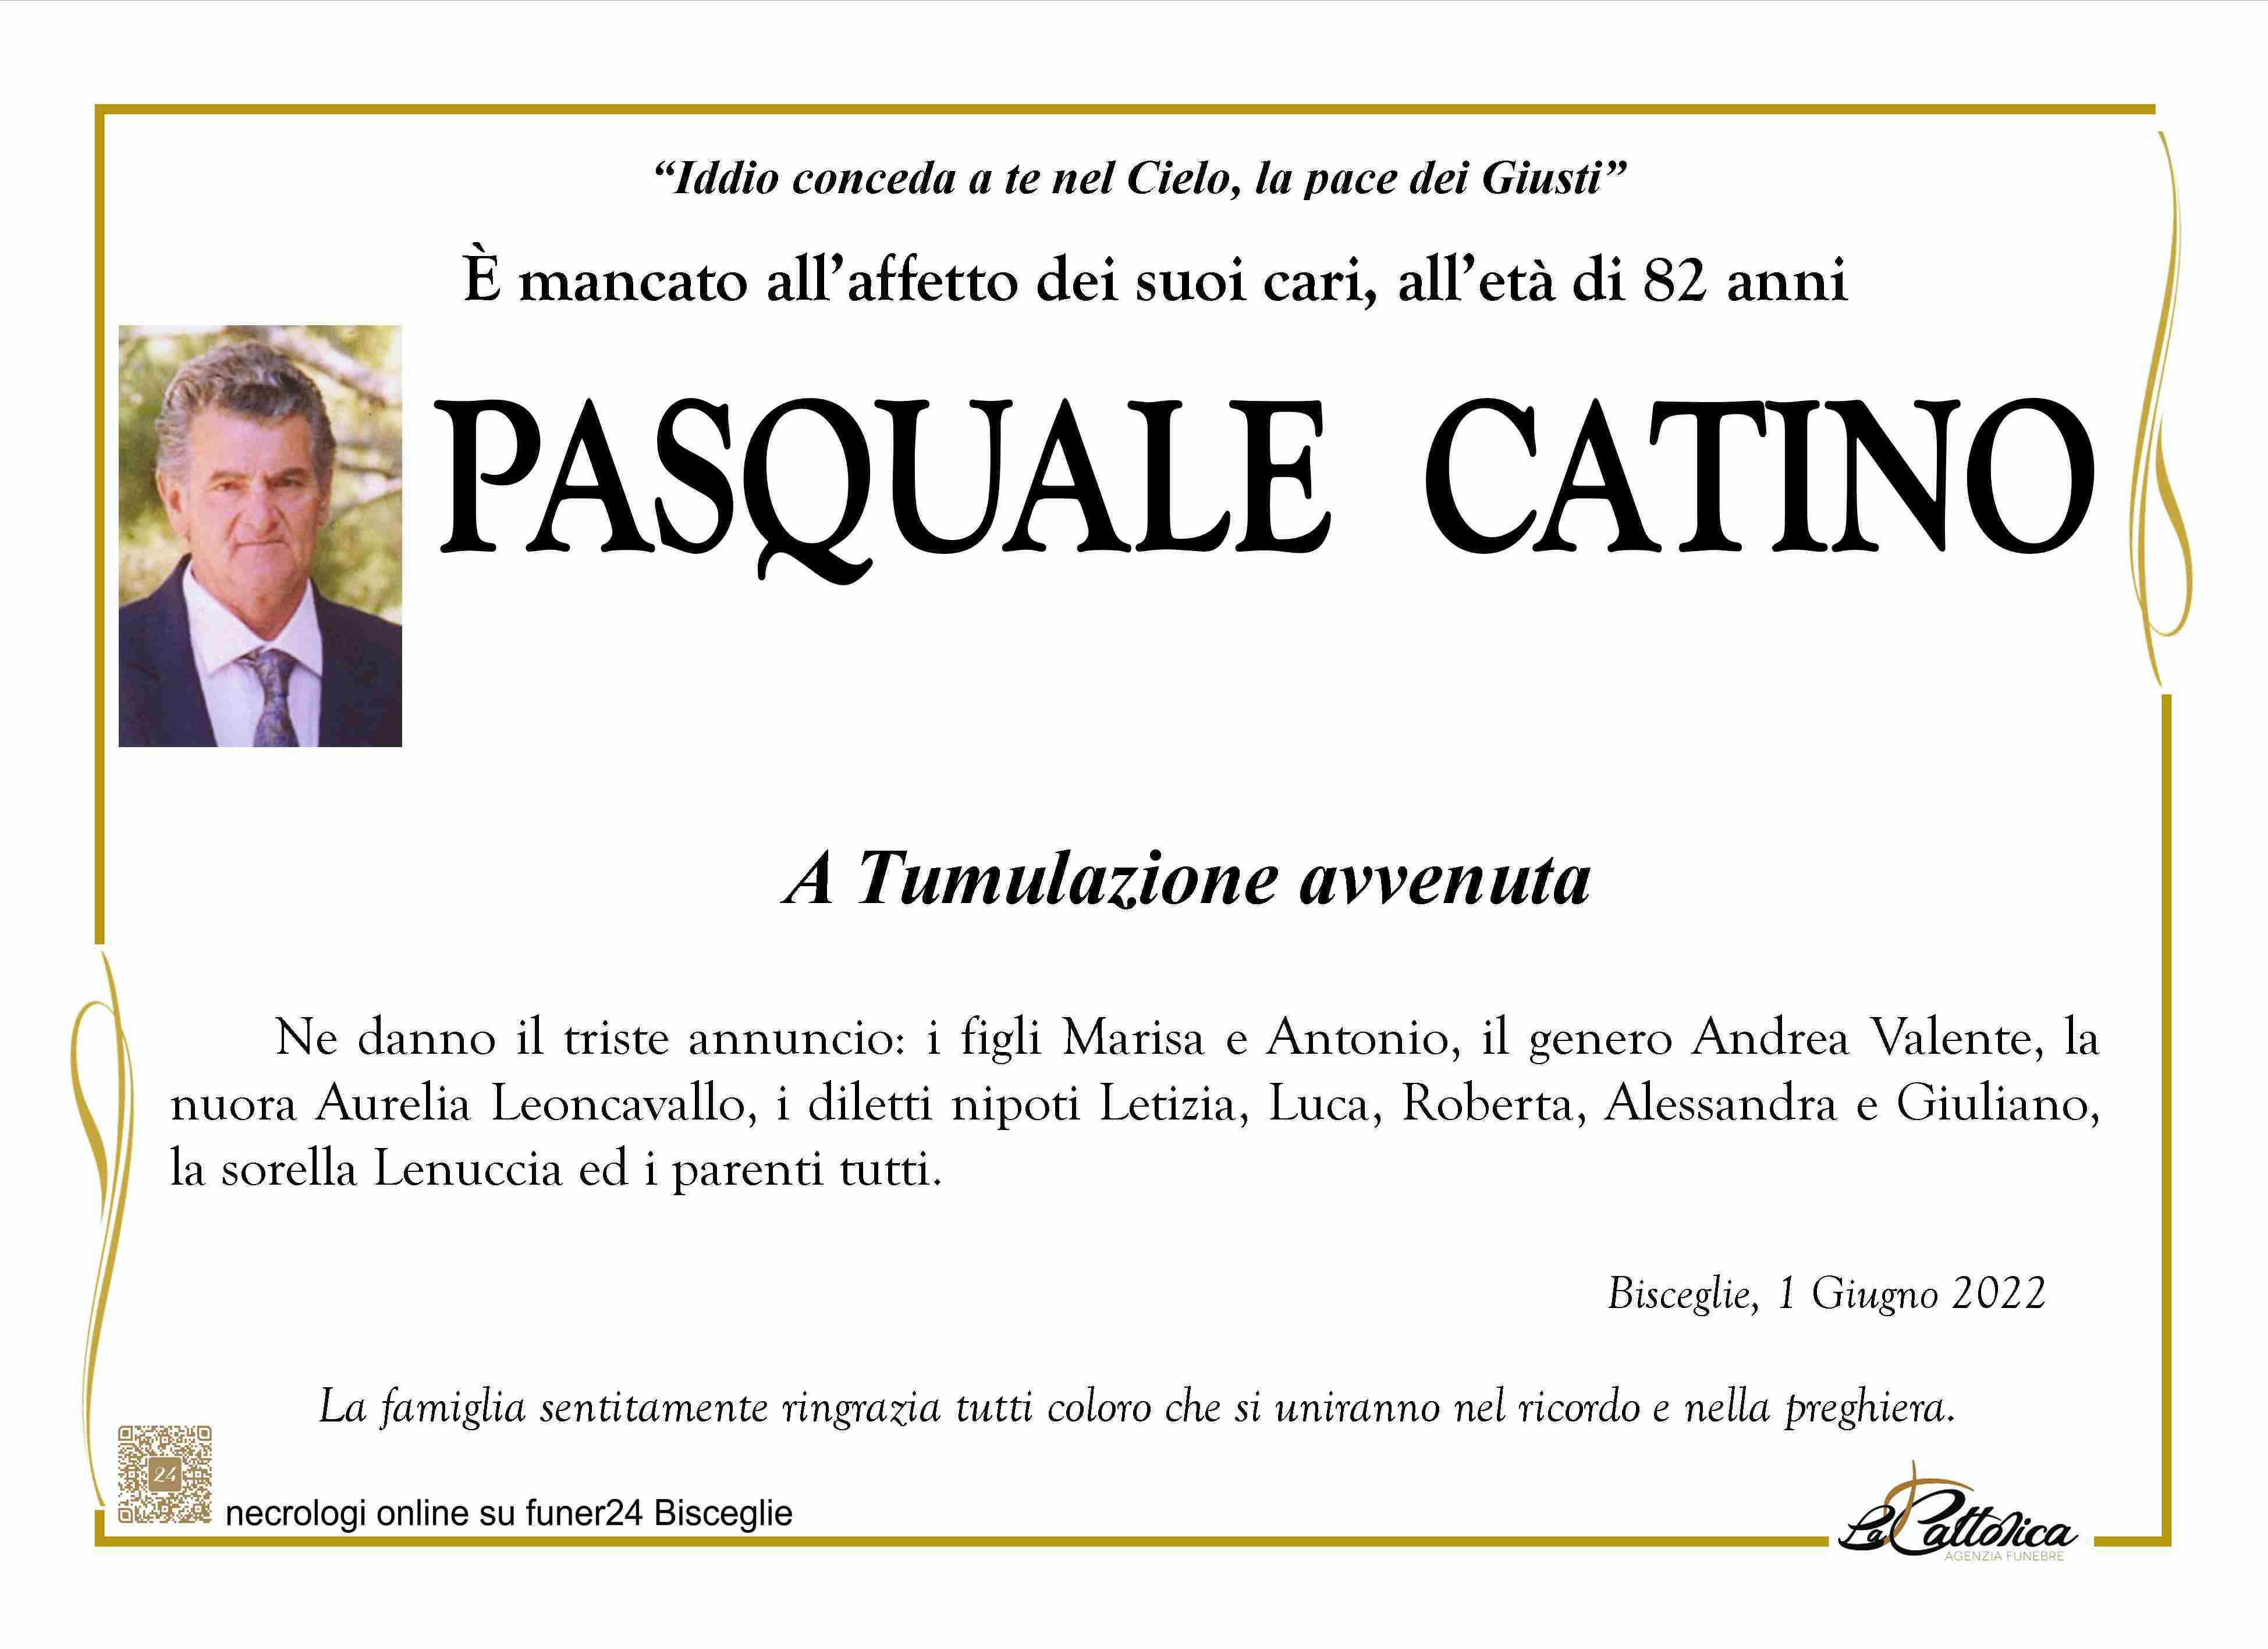 Pasquale Catino